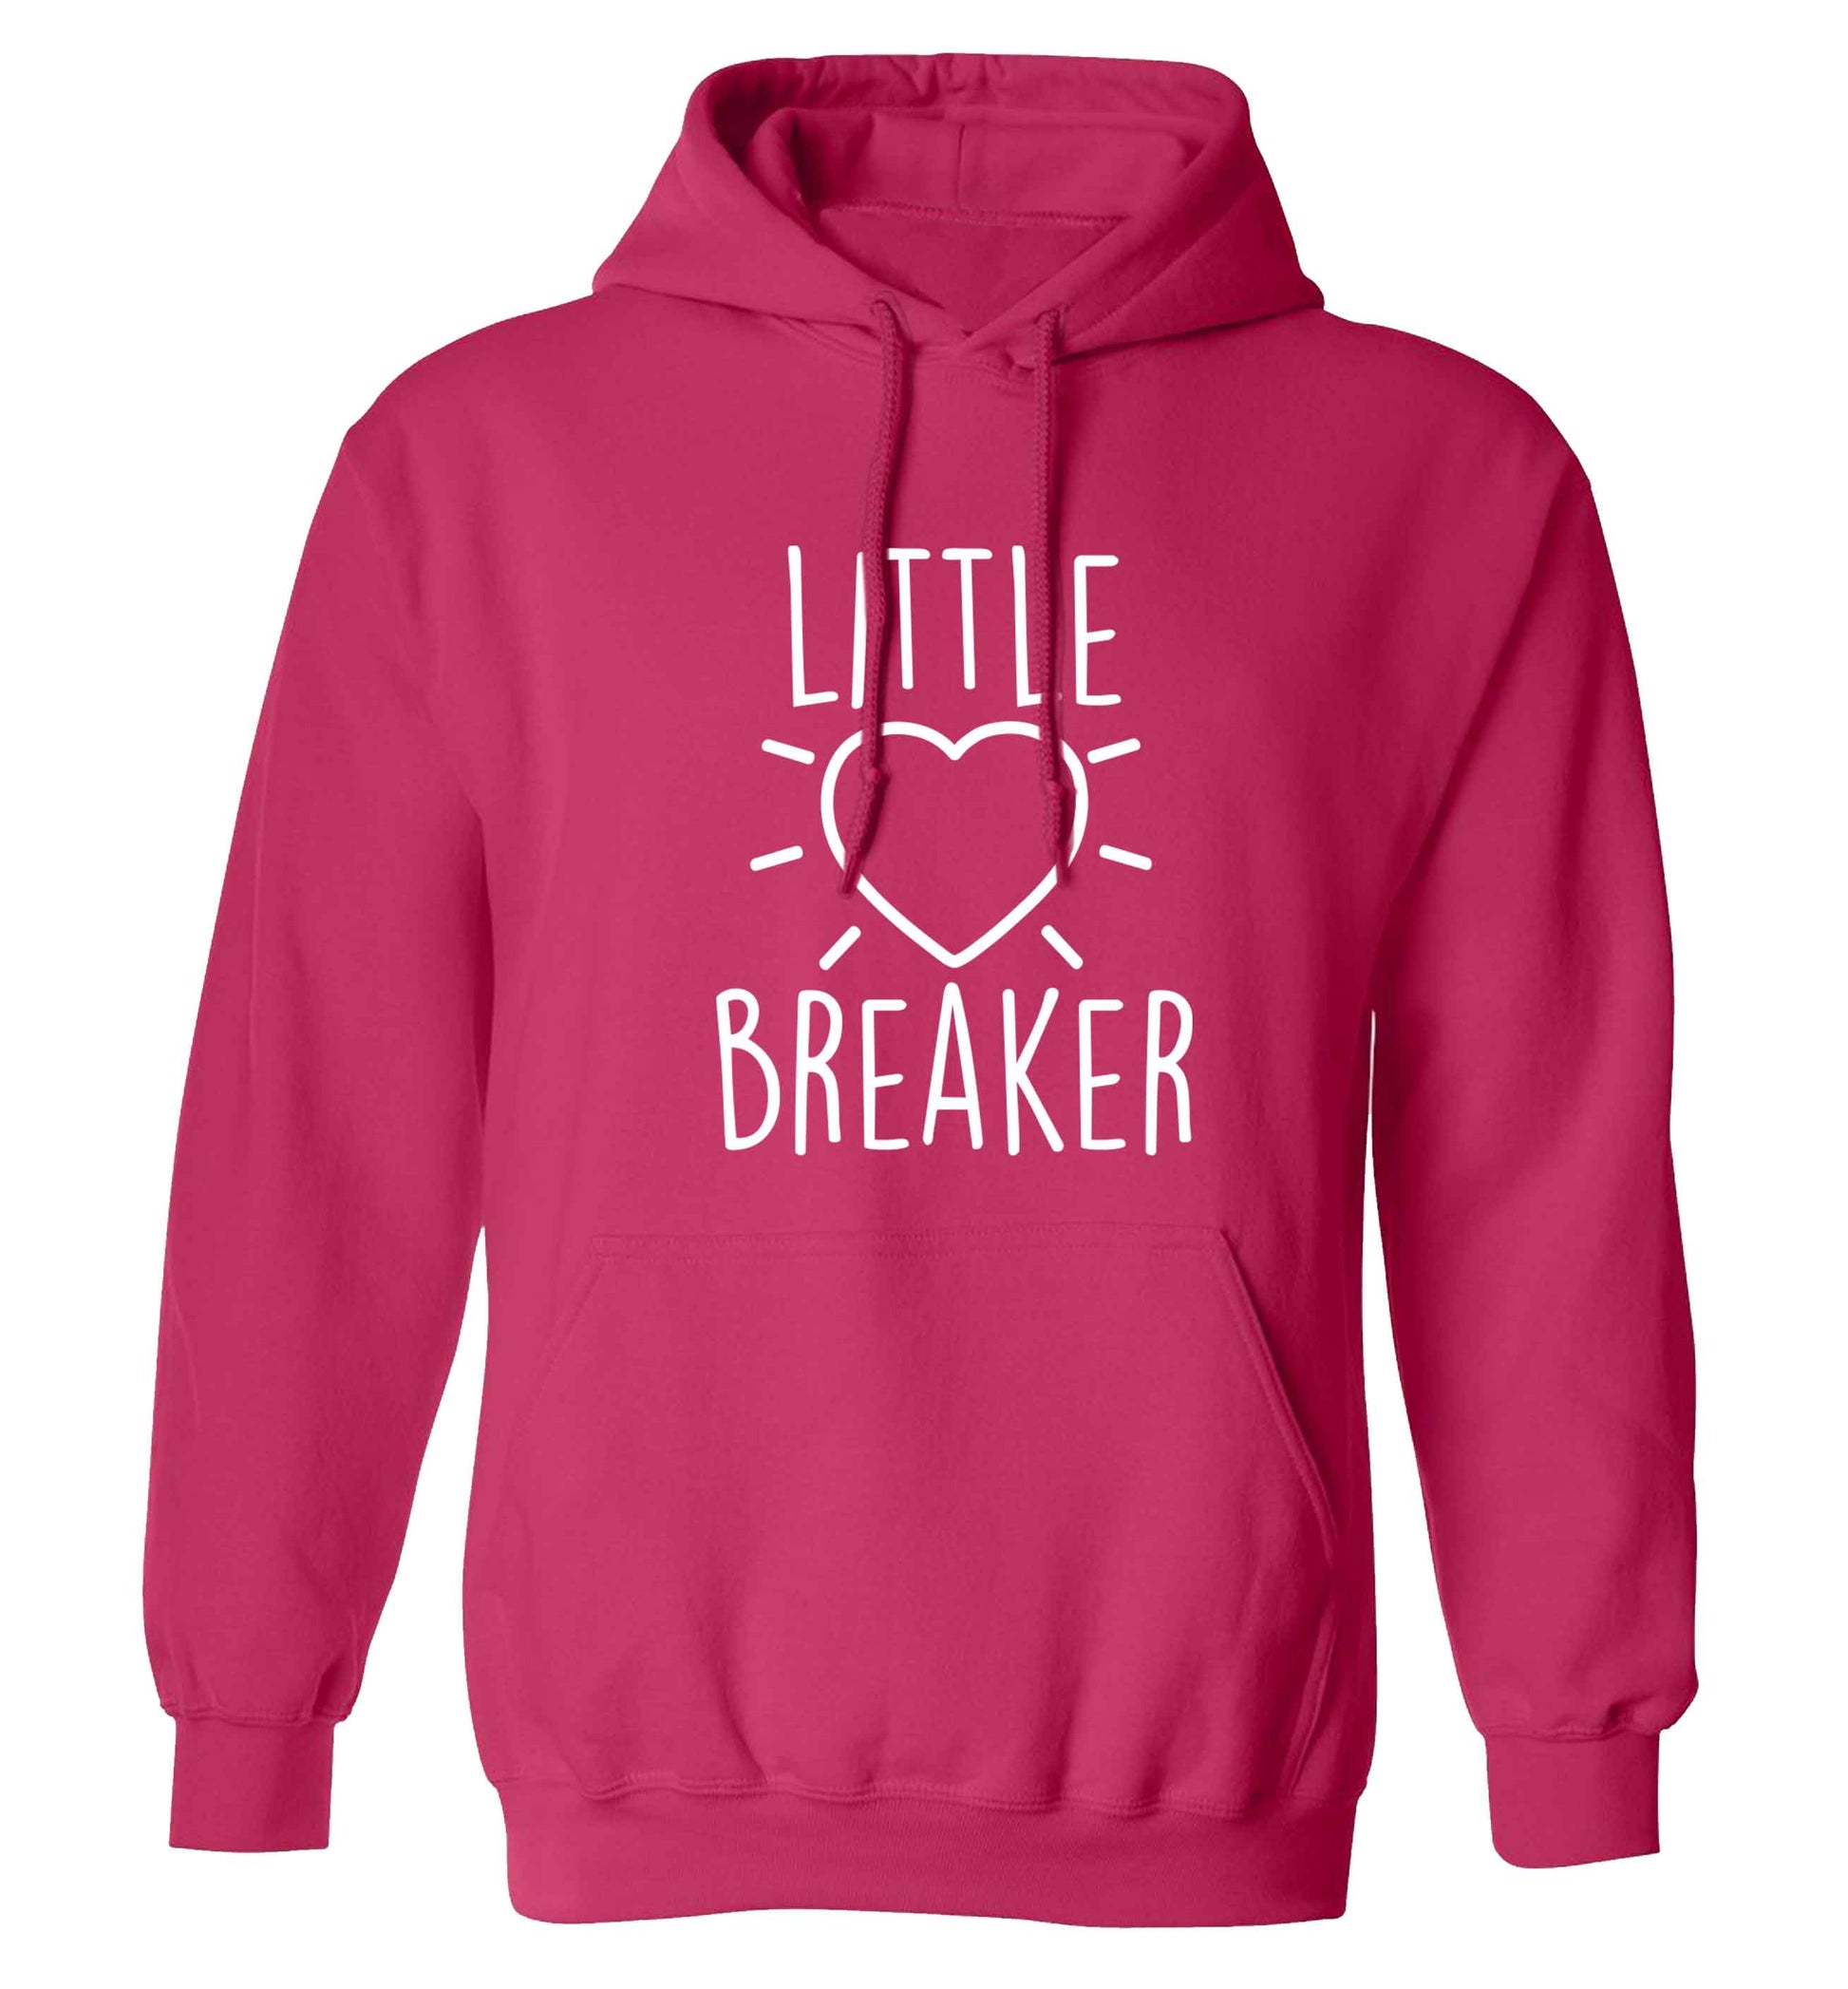 Little heartbreaker adults unisex pink hoodie 2XL